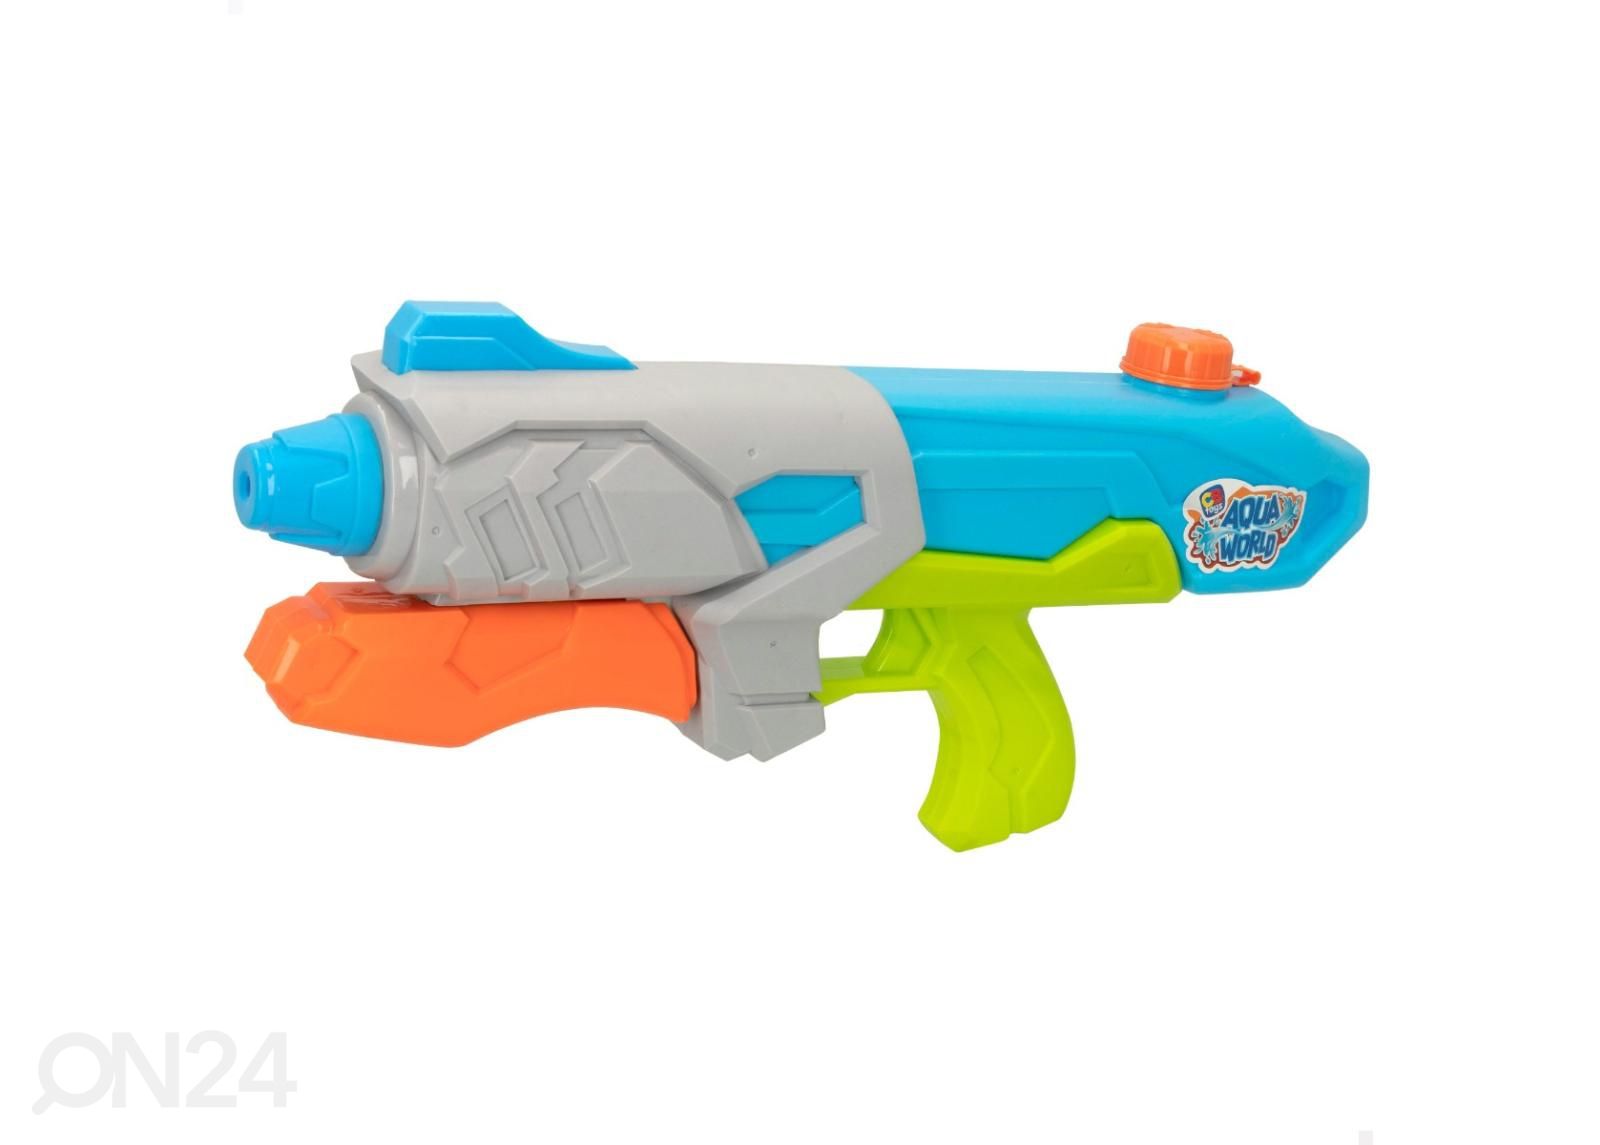 Водный пистолет Aqua World CB Toys 950 ml увеличить